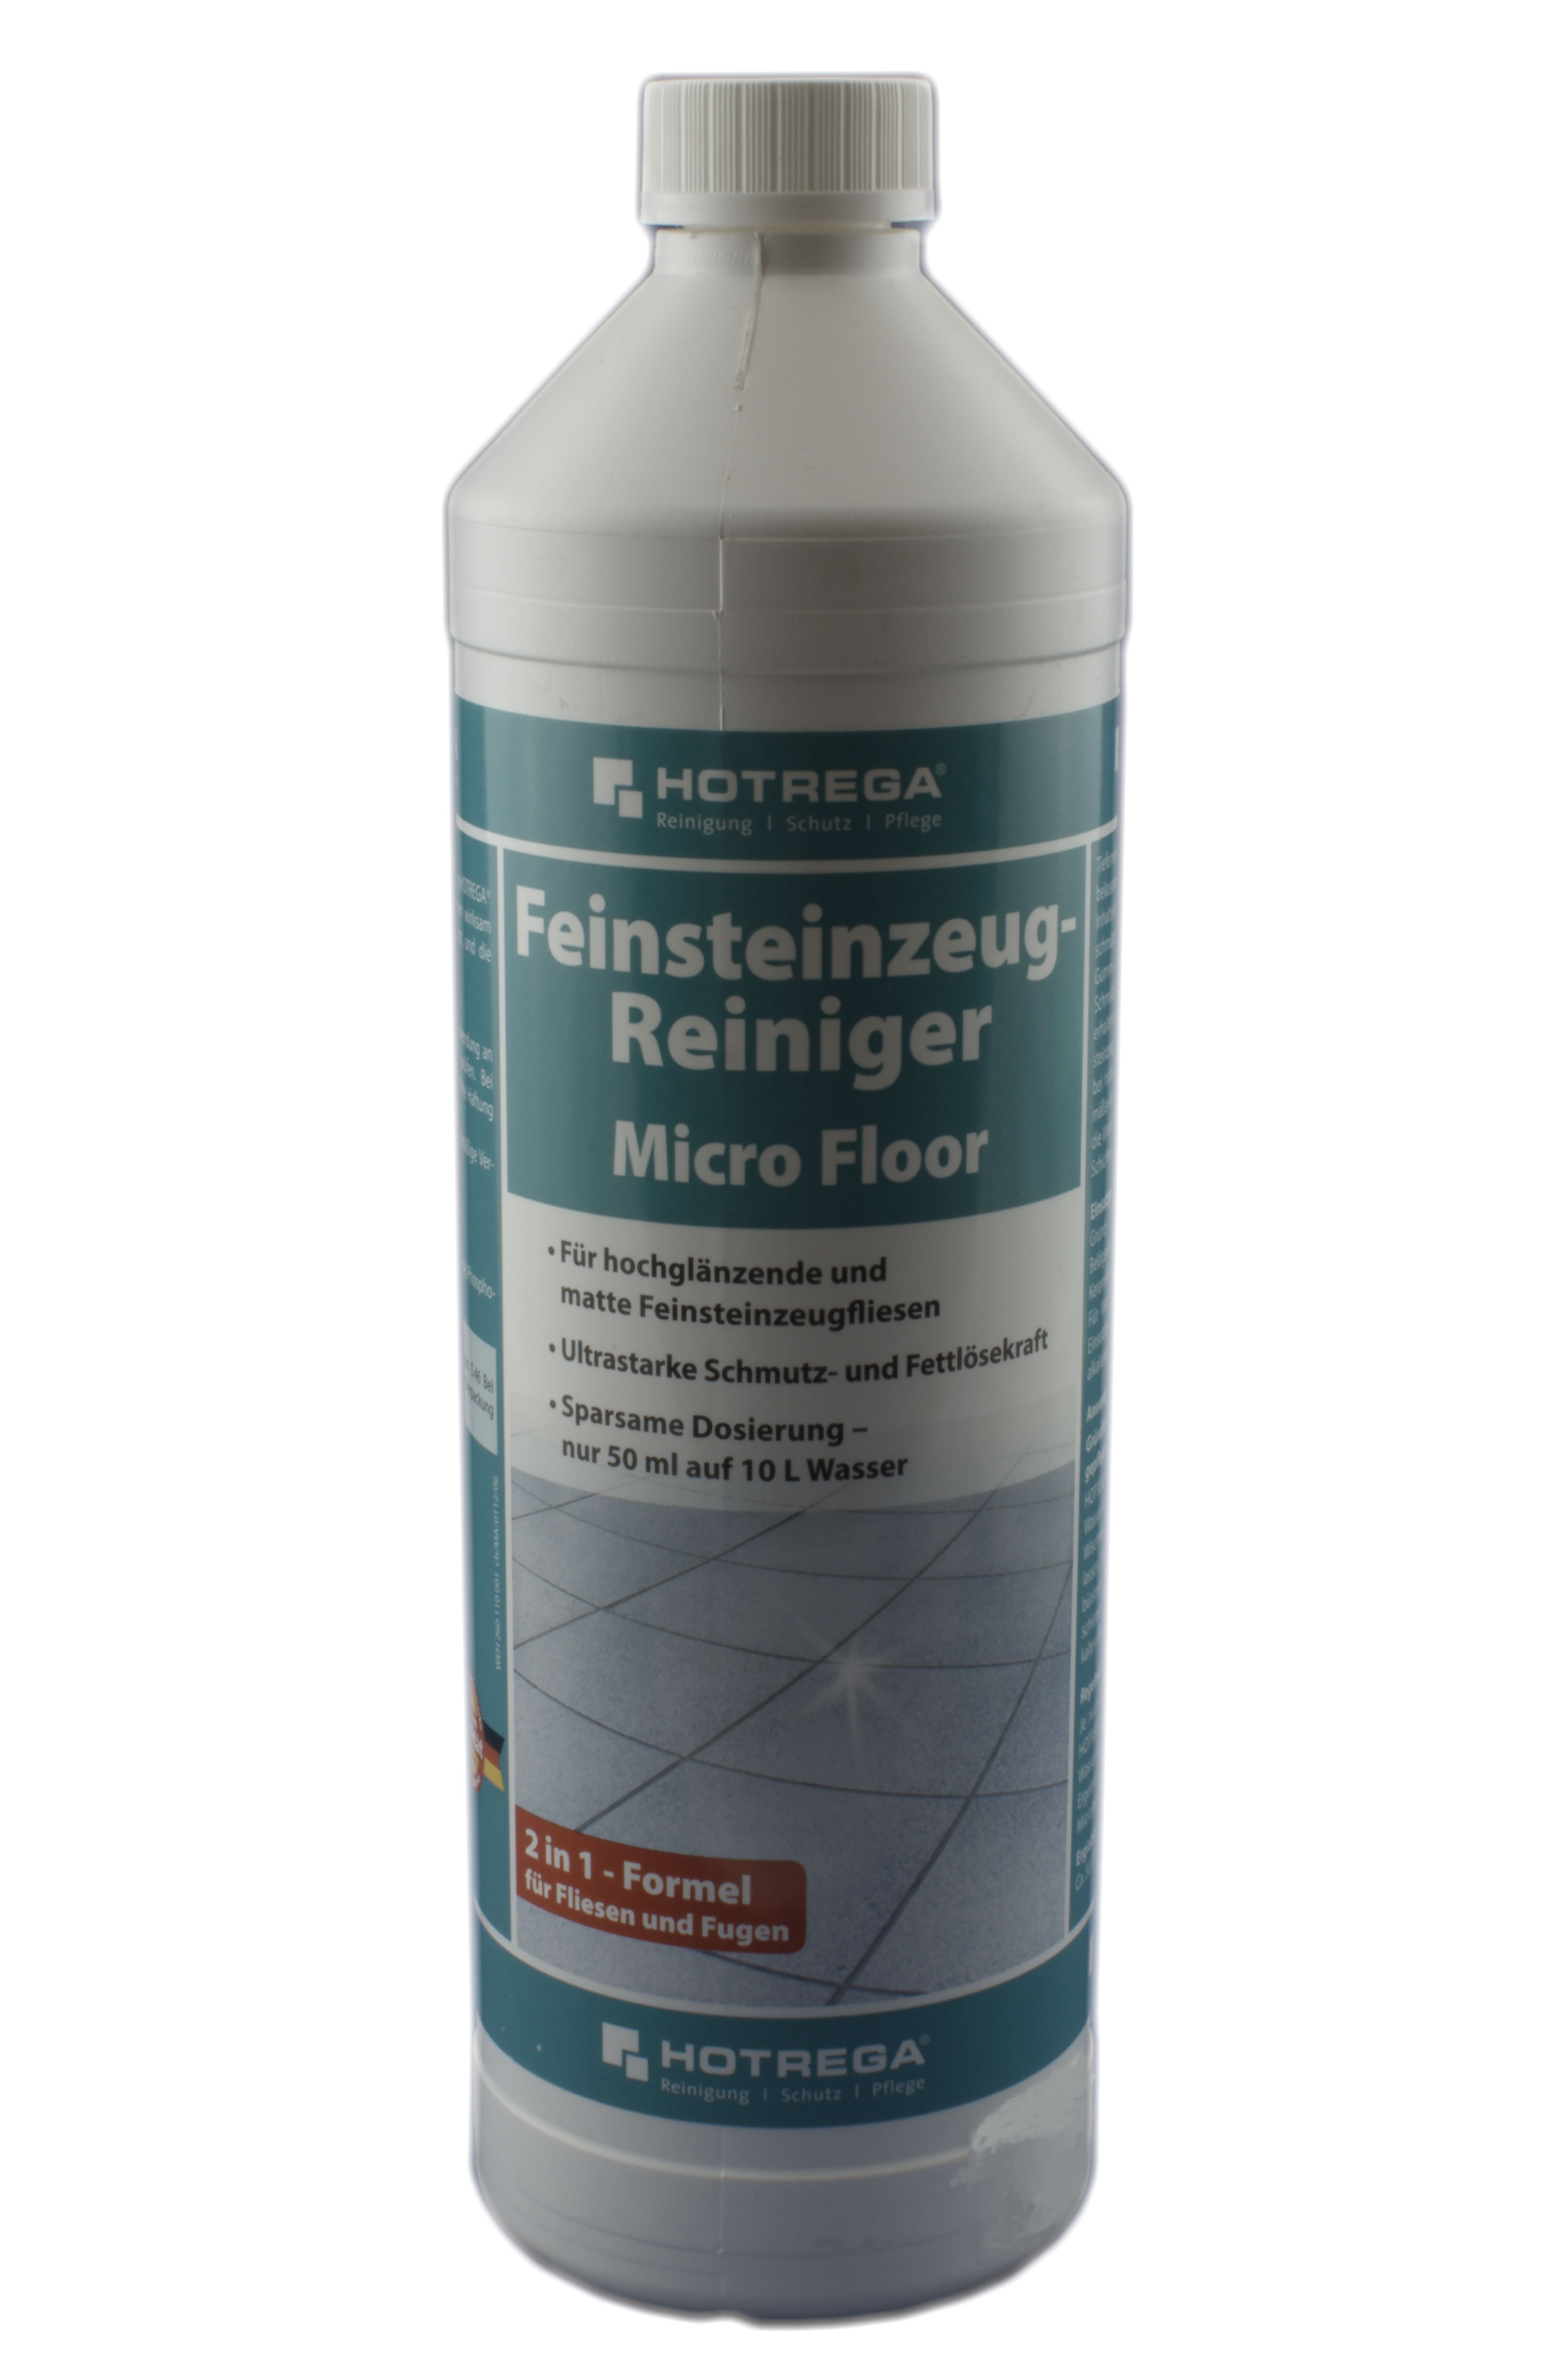 Hotrega Feinsteinzeug-Reiniger  "Microfloor"  1 ltr.